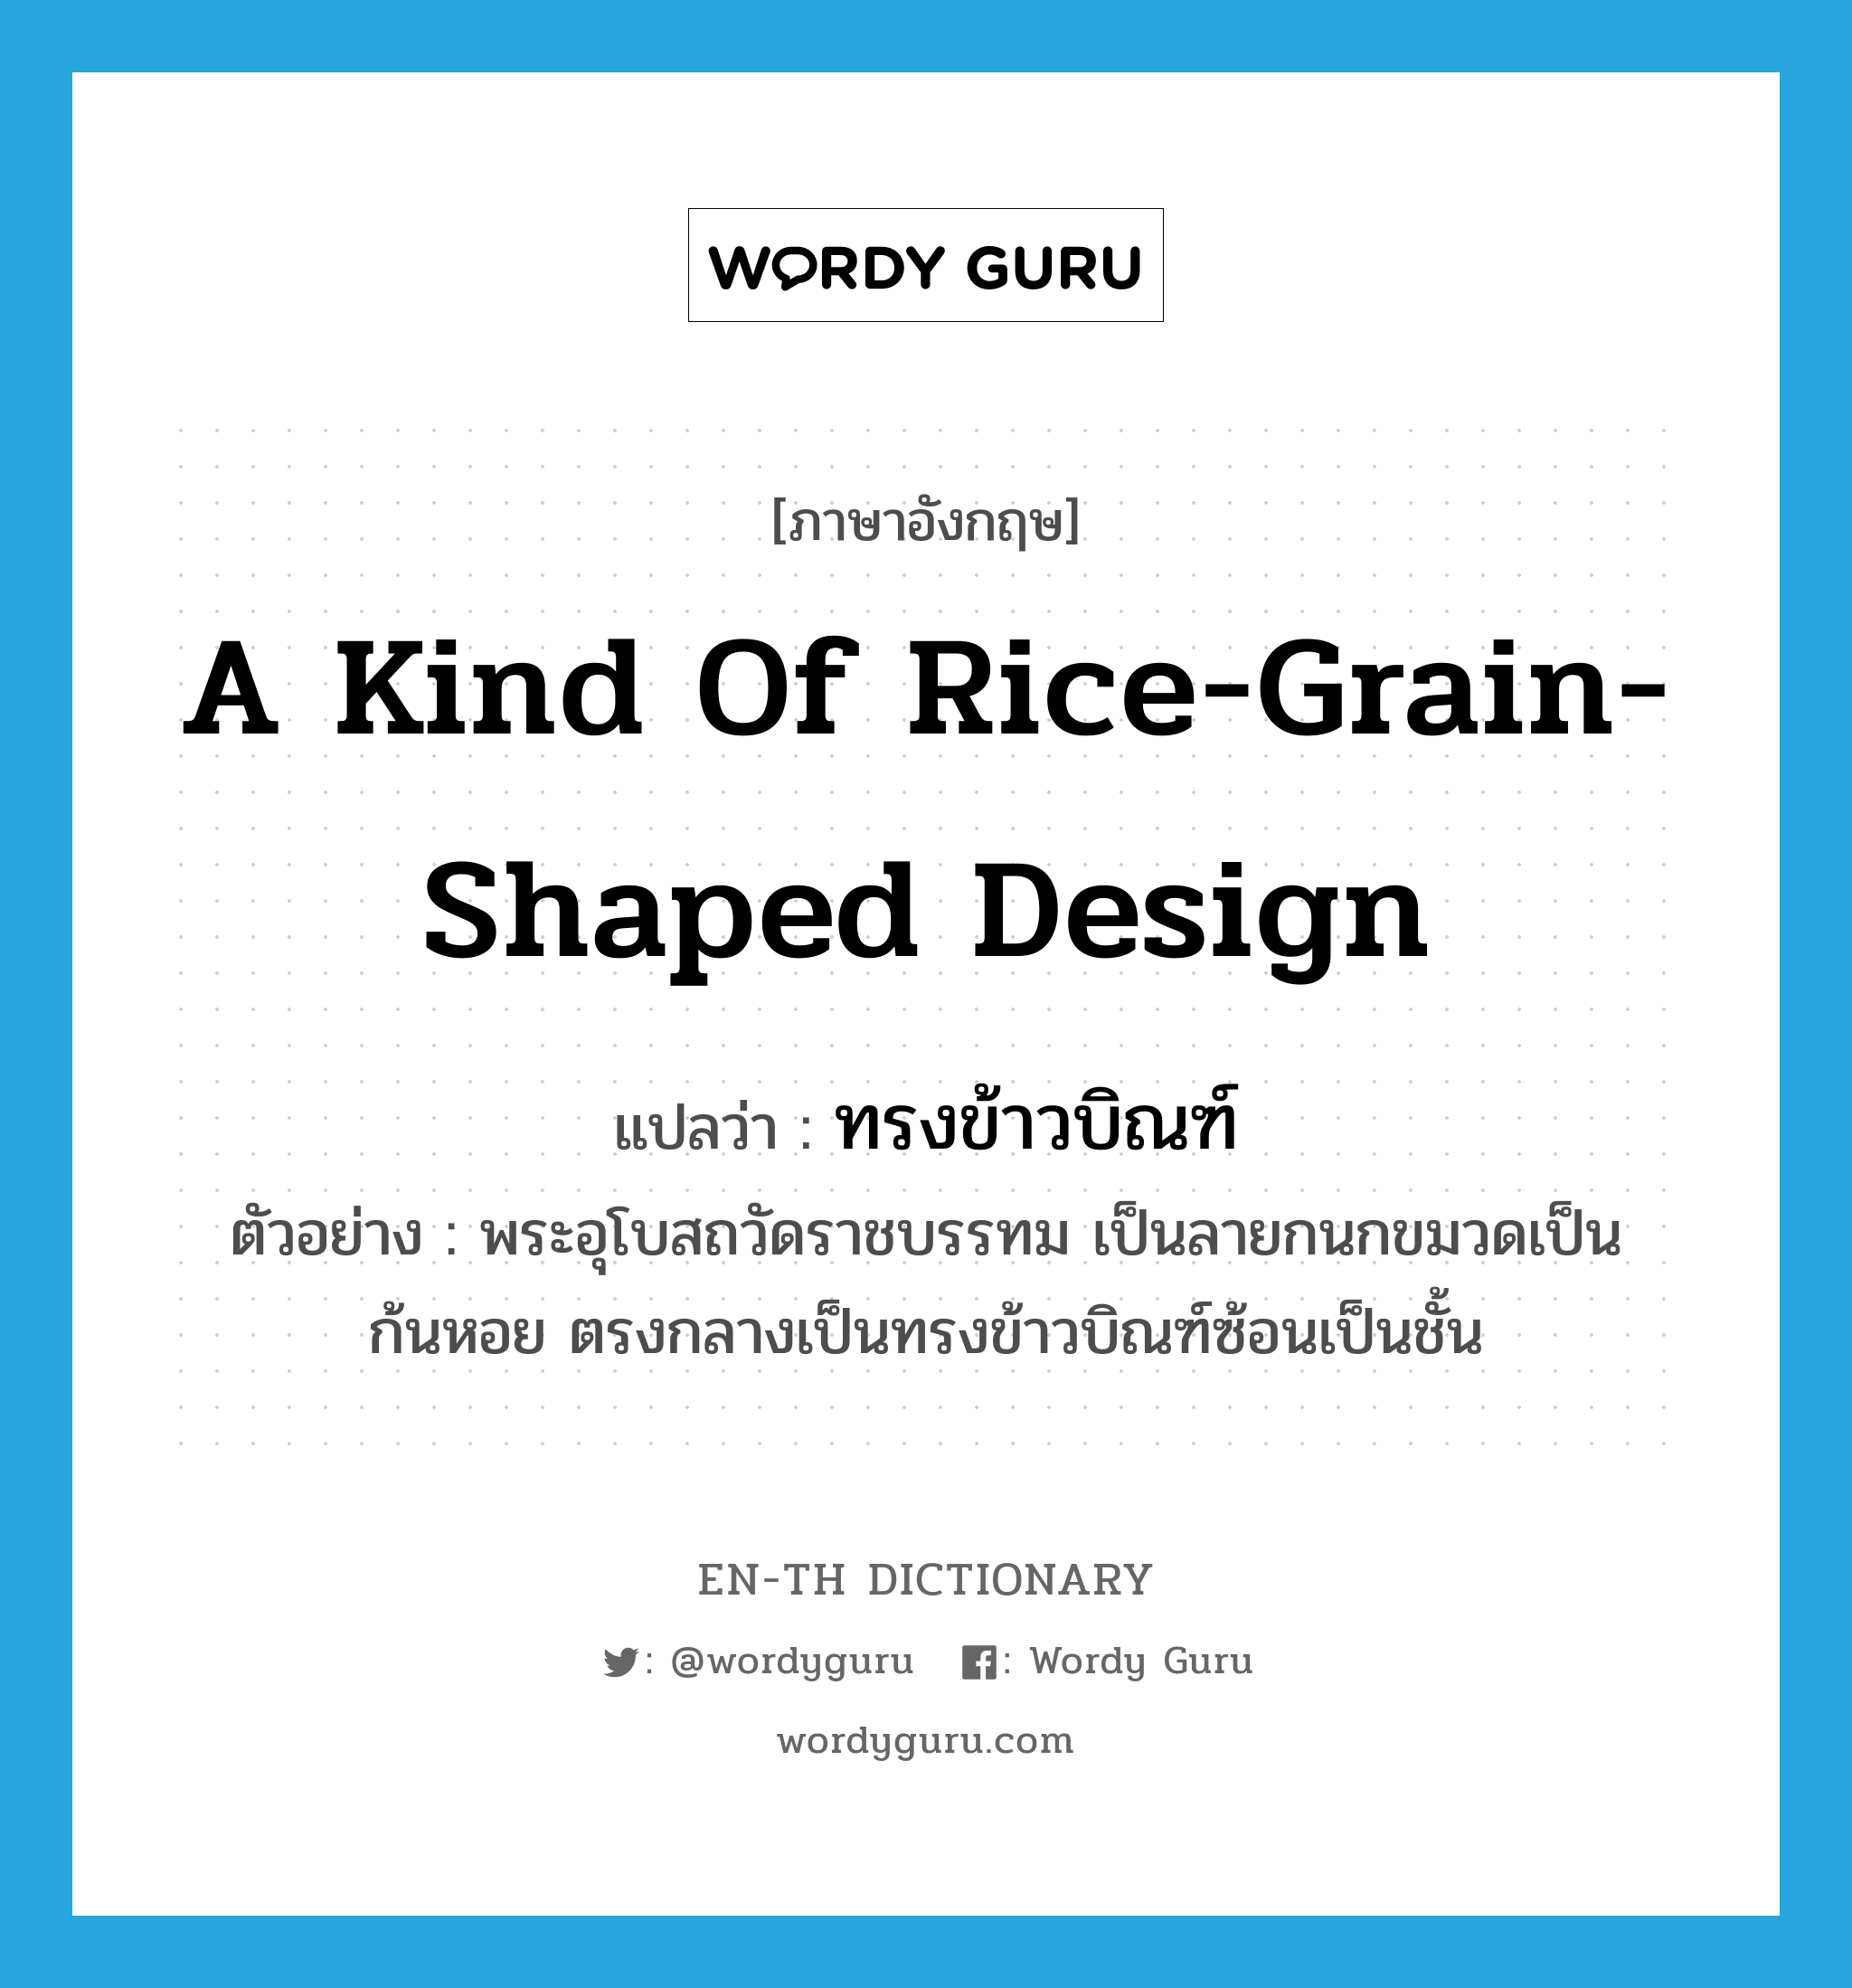 ทรงข้าวบิณฑ์ ภาษาอังกฤษ?, คำศัพท์ภาษาอังกฤษ ทรงข้าวบิณฑ์ แปลว่า a kind of rice-grain-shaped design ประเภท N ตัวอย่าง พระอุโบสถวัดราชบรรทม เป็นลายกนกขมวดเป็นก้นหอย ตรงกลางเป็นทรงข้าวบิณฑ์ซ้อนเป็นชั้น หมวด N